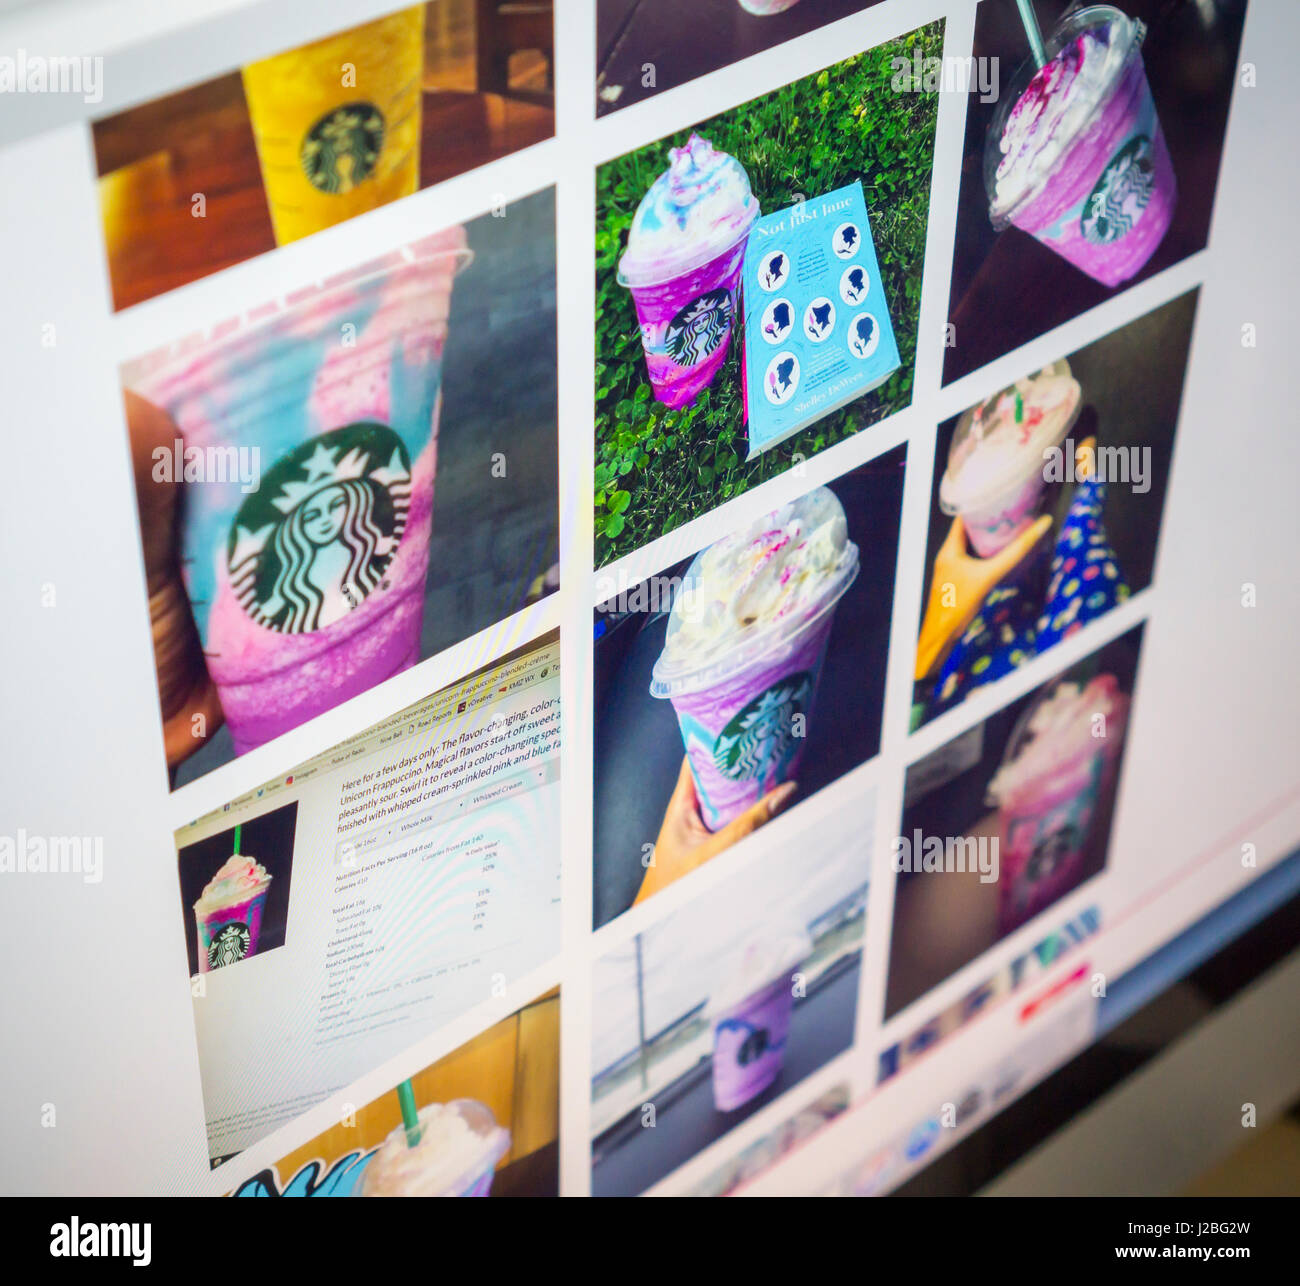 Le pagine di Instagram giovedì, 20 aprile 2017 sono riempiti con le foto della limited edition Starbucks Frappuccino Unicorn bere. La bevanda, una mescola colorata di rosa polvere, sciroppo di mango e aspro pioggerella blu in un frappuccino. Il colore e il sapore cambia come voi lo swirl e la commercializzazione rende ready-made per i social media. (© Richard B. Levine) Foto Stock